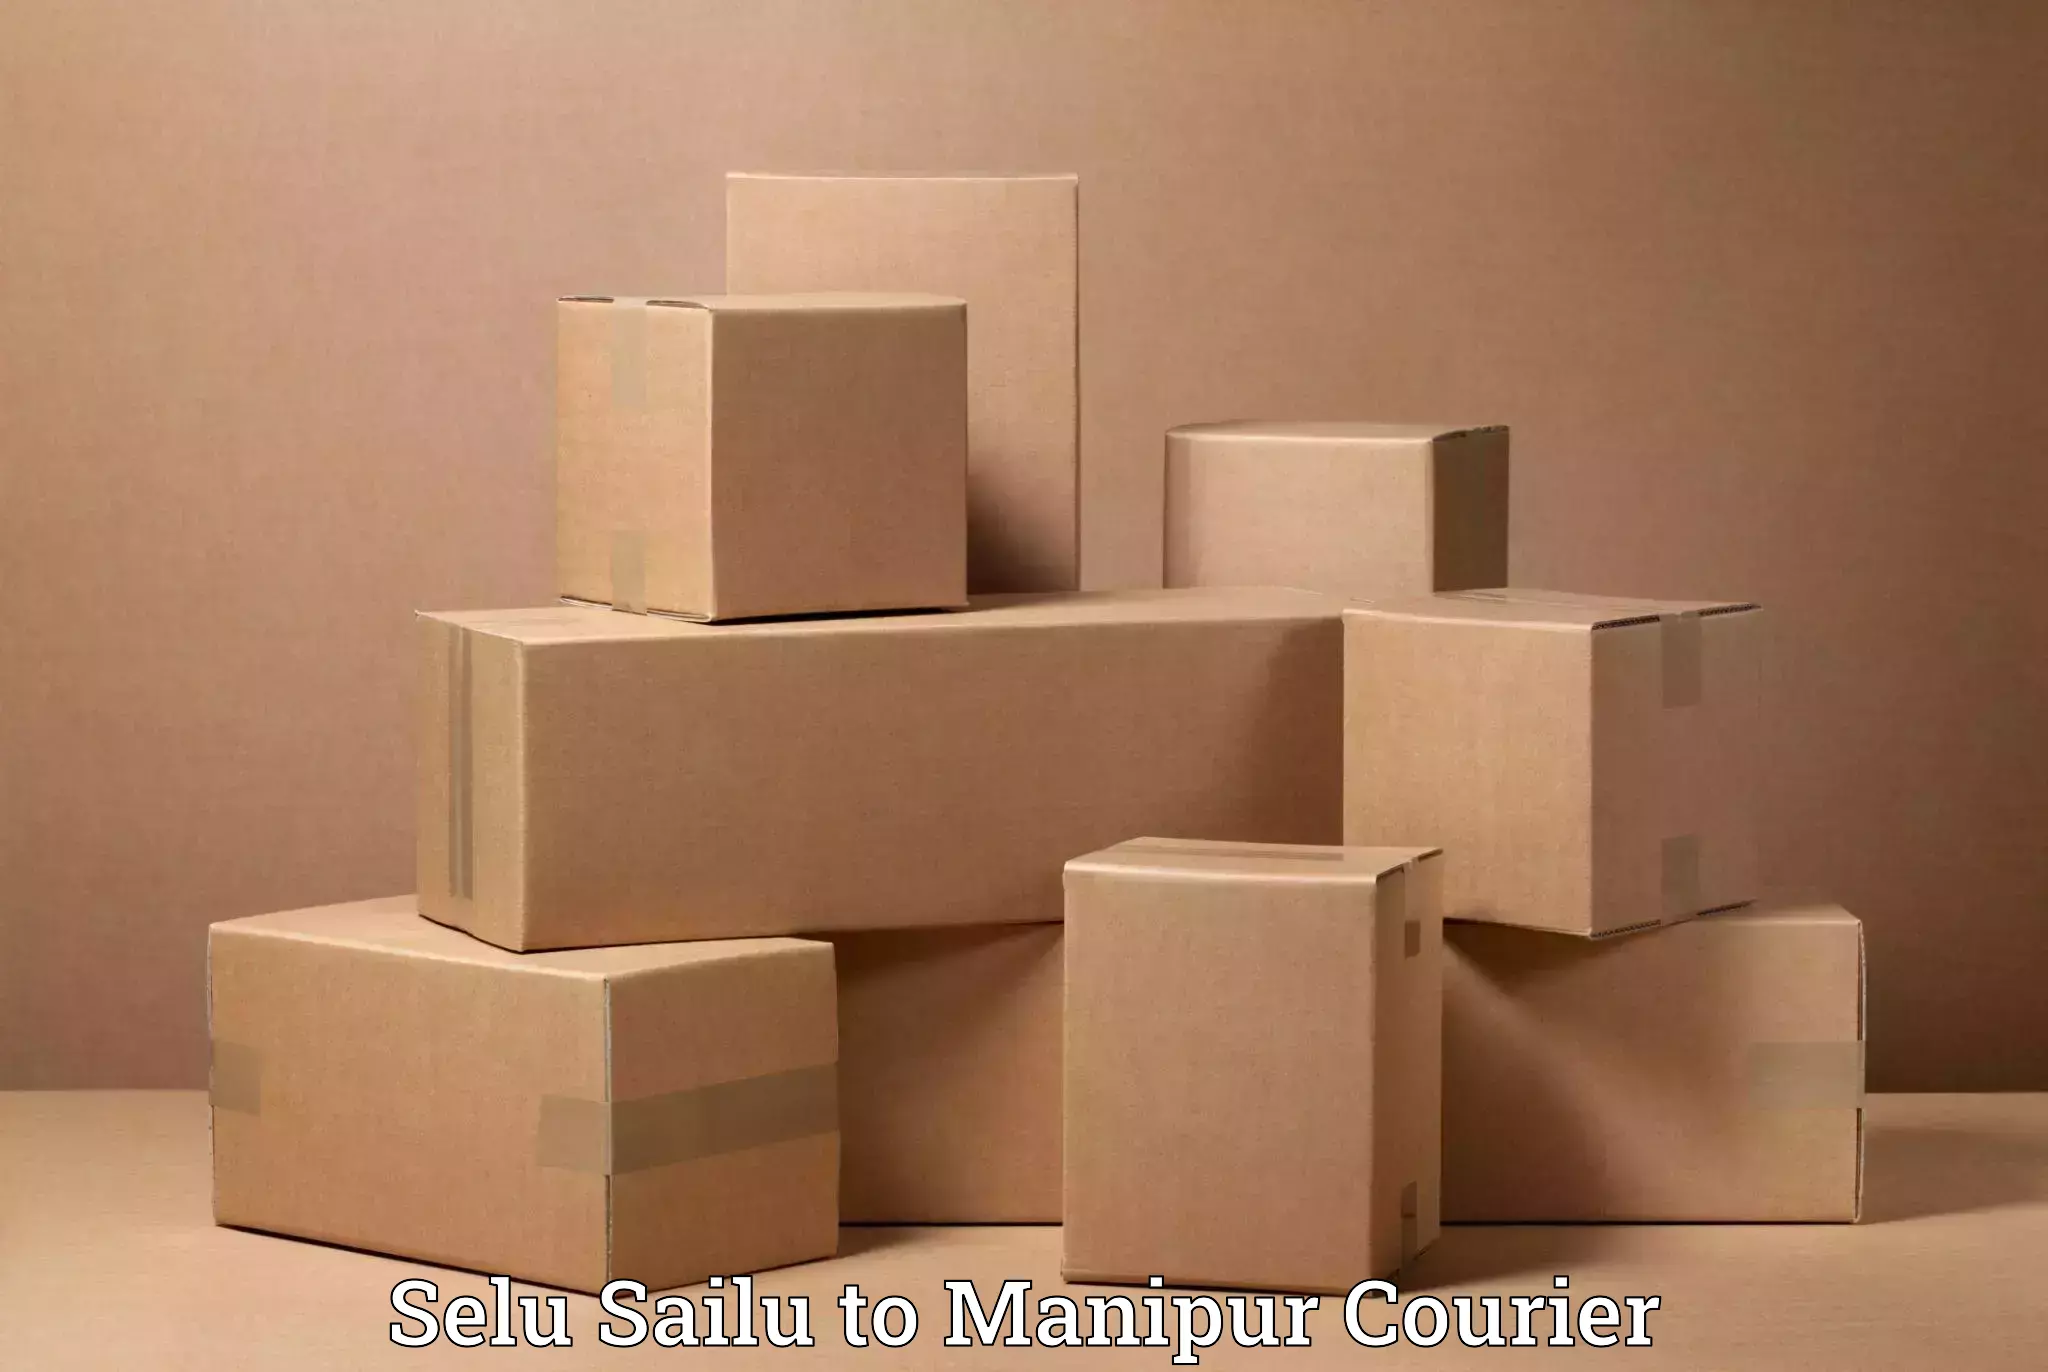 Professional moving company Selu Sailu to Moirang